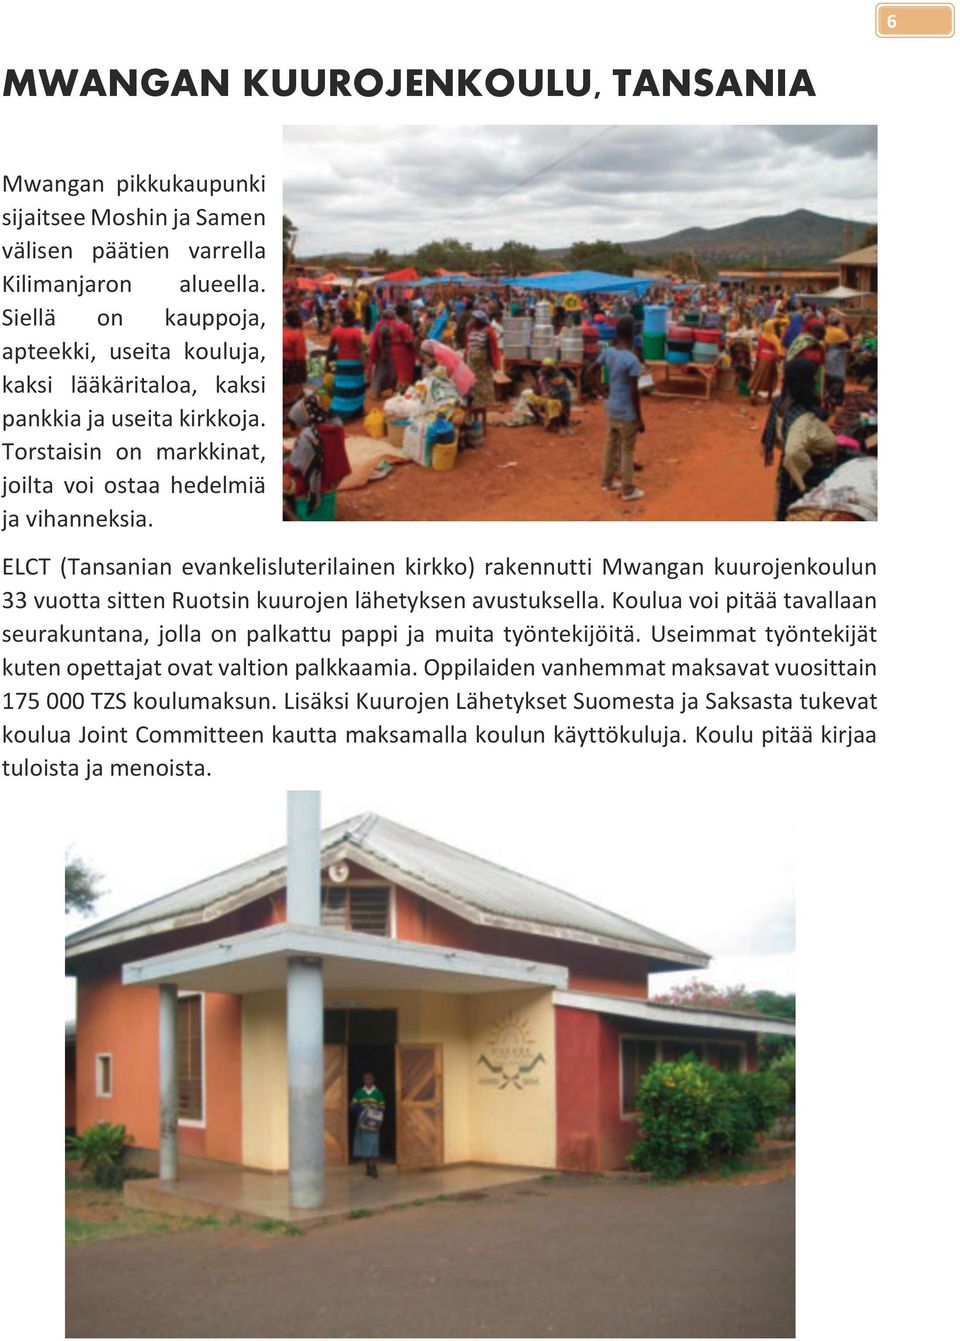 ELCT (Tansanian evankelisluterilainen kirkko) rakennutti Mwangan kuurojenkoulun 33 vuotta sitten Ruotsin kuurojen lähetyksen avustuksella.